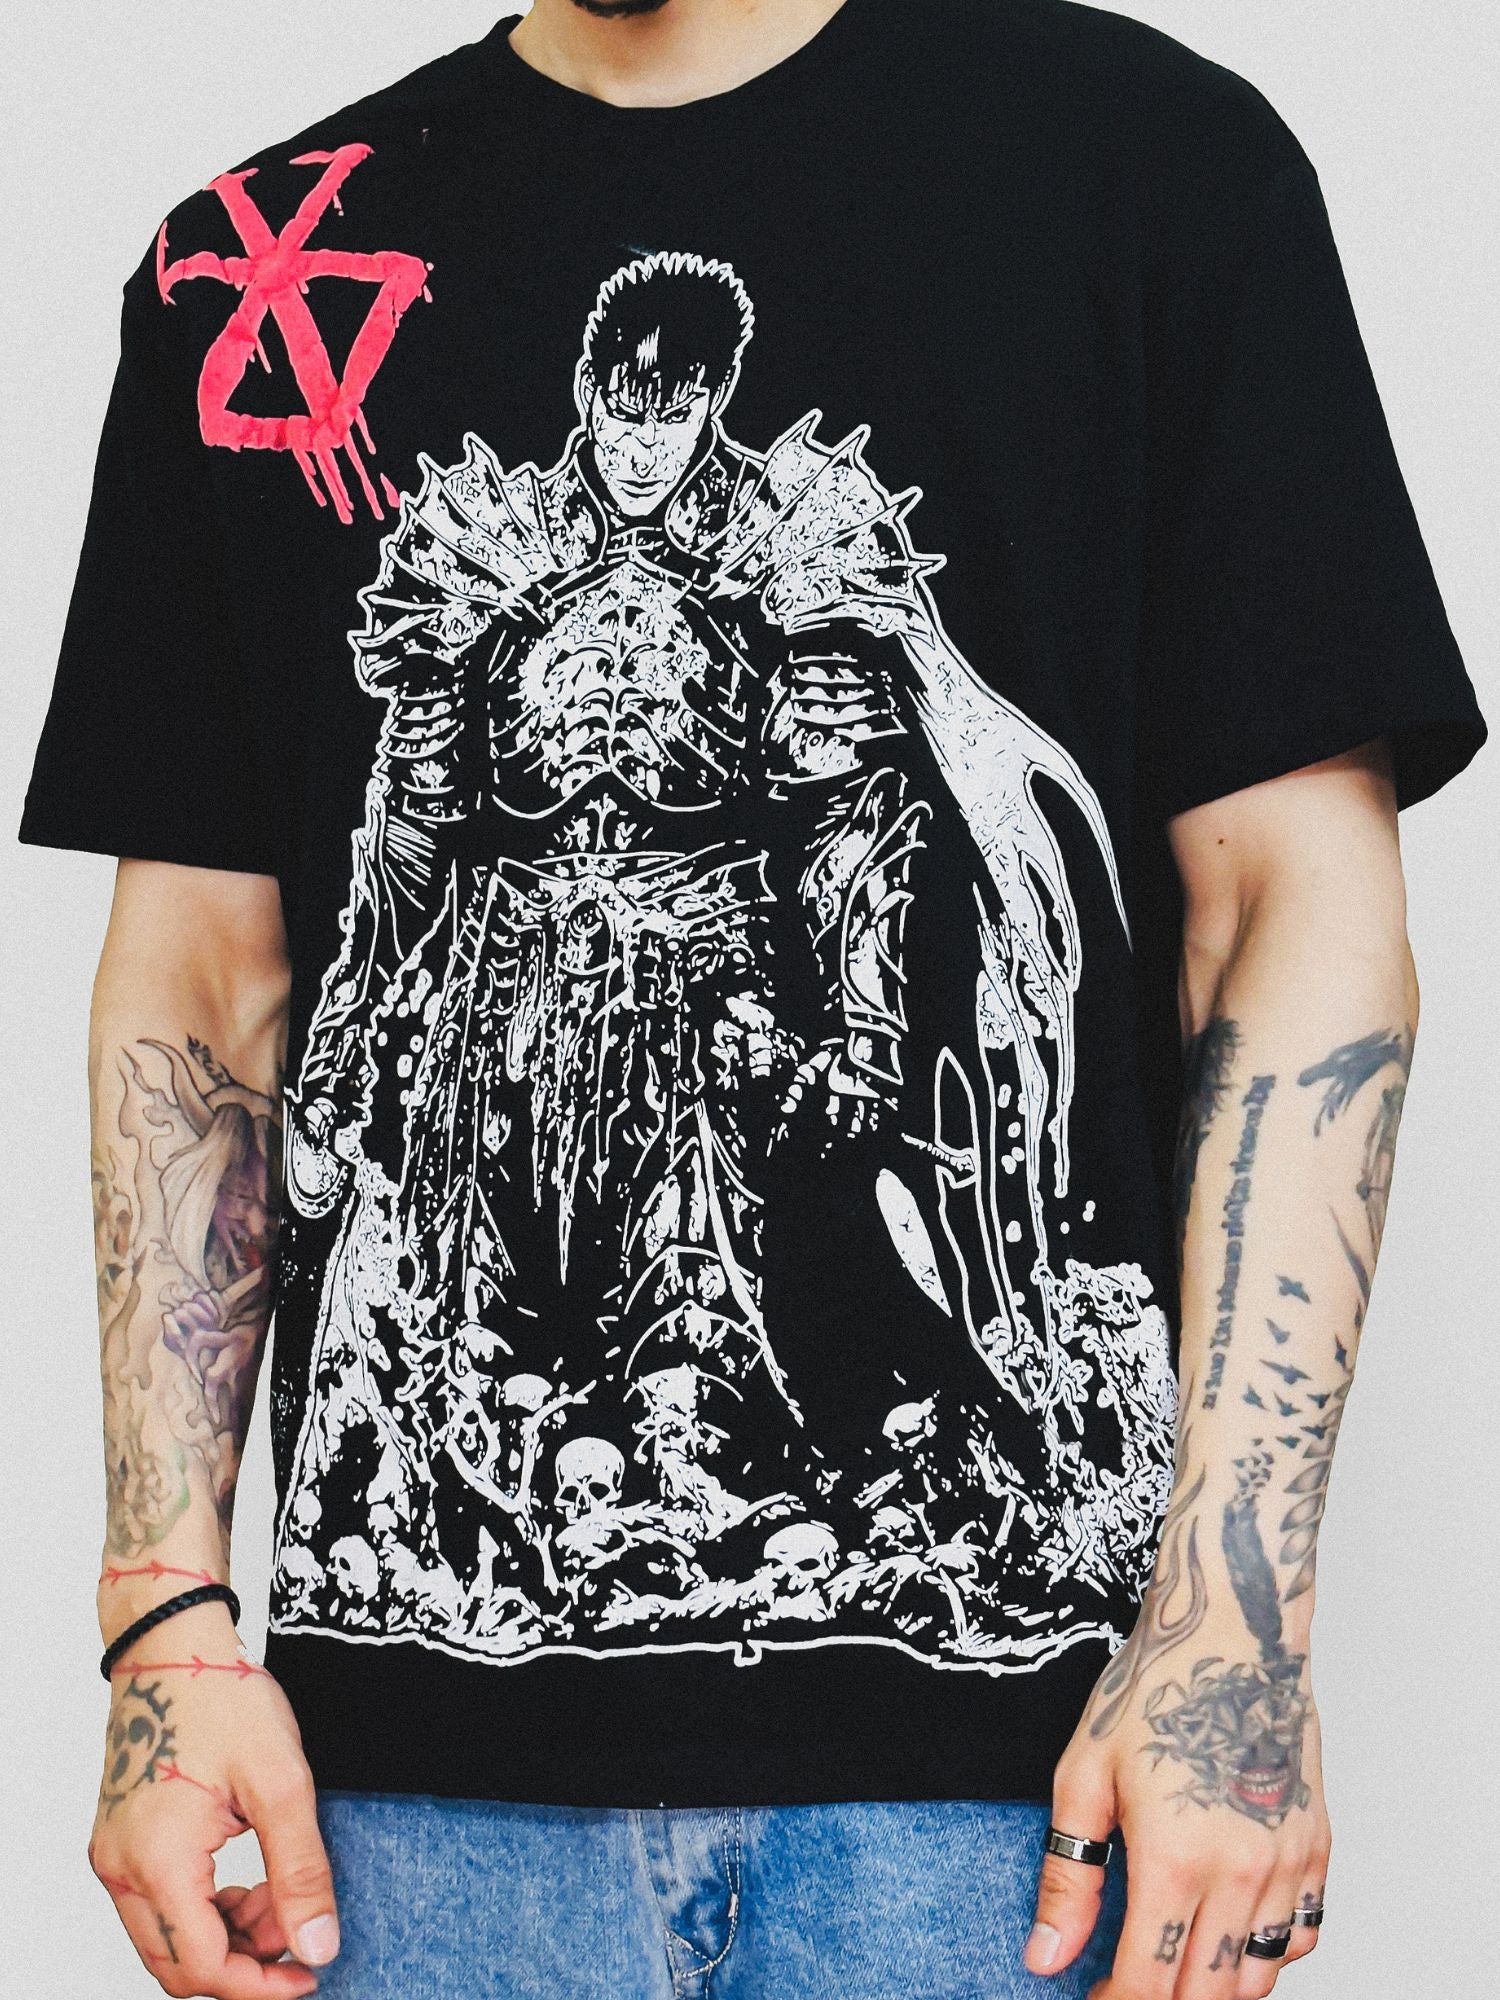 Berserk x Guts: Oversized Guts Knight Berserk T-Shirt